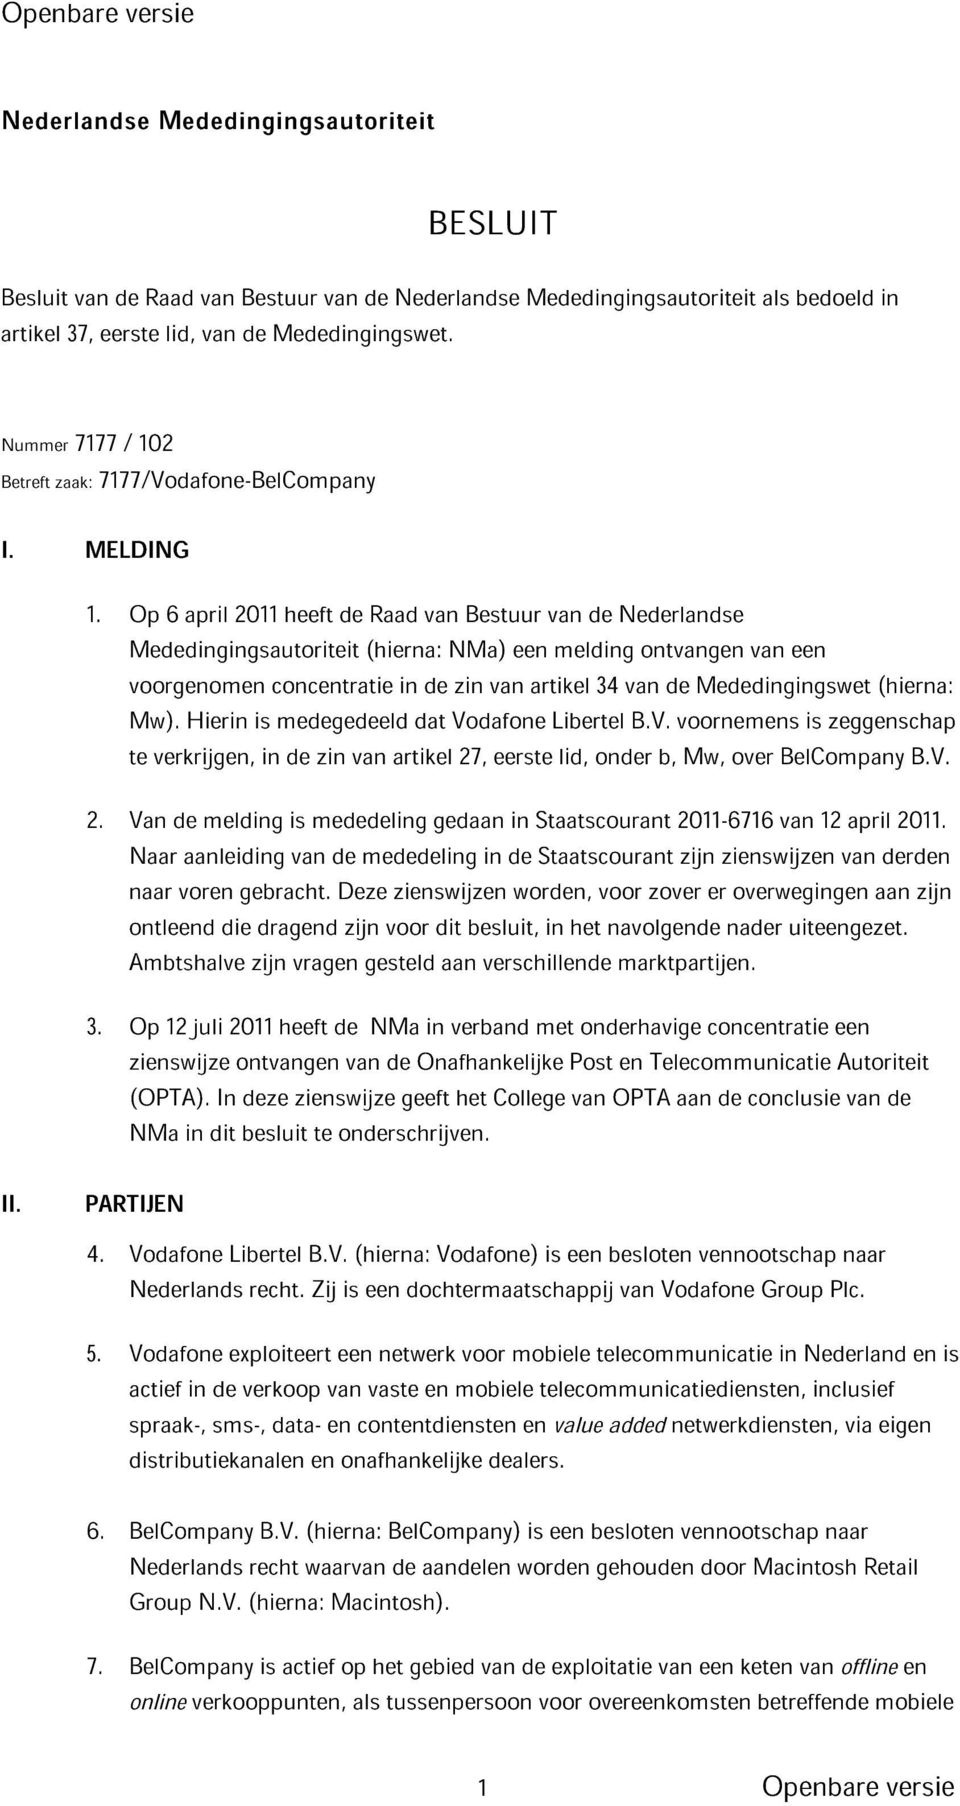 Op 6 april 2011 heeft de Raad van Bestuur van de Nederlandse Mededingingsautoriteit (hierna: NMa) een melding ontvangen van een voorgenomen concentratie in de zin van artikel 34 van de